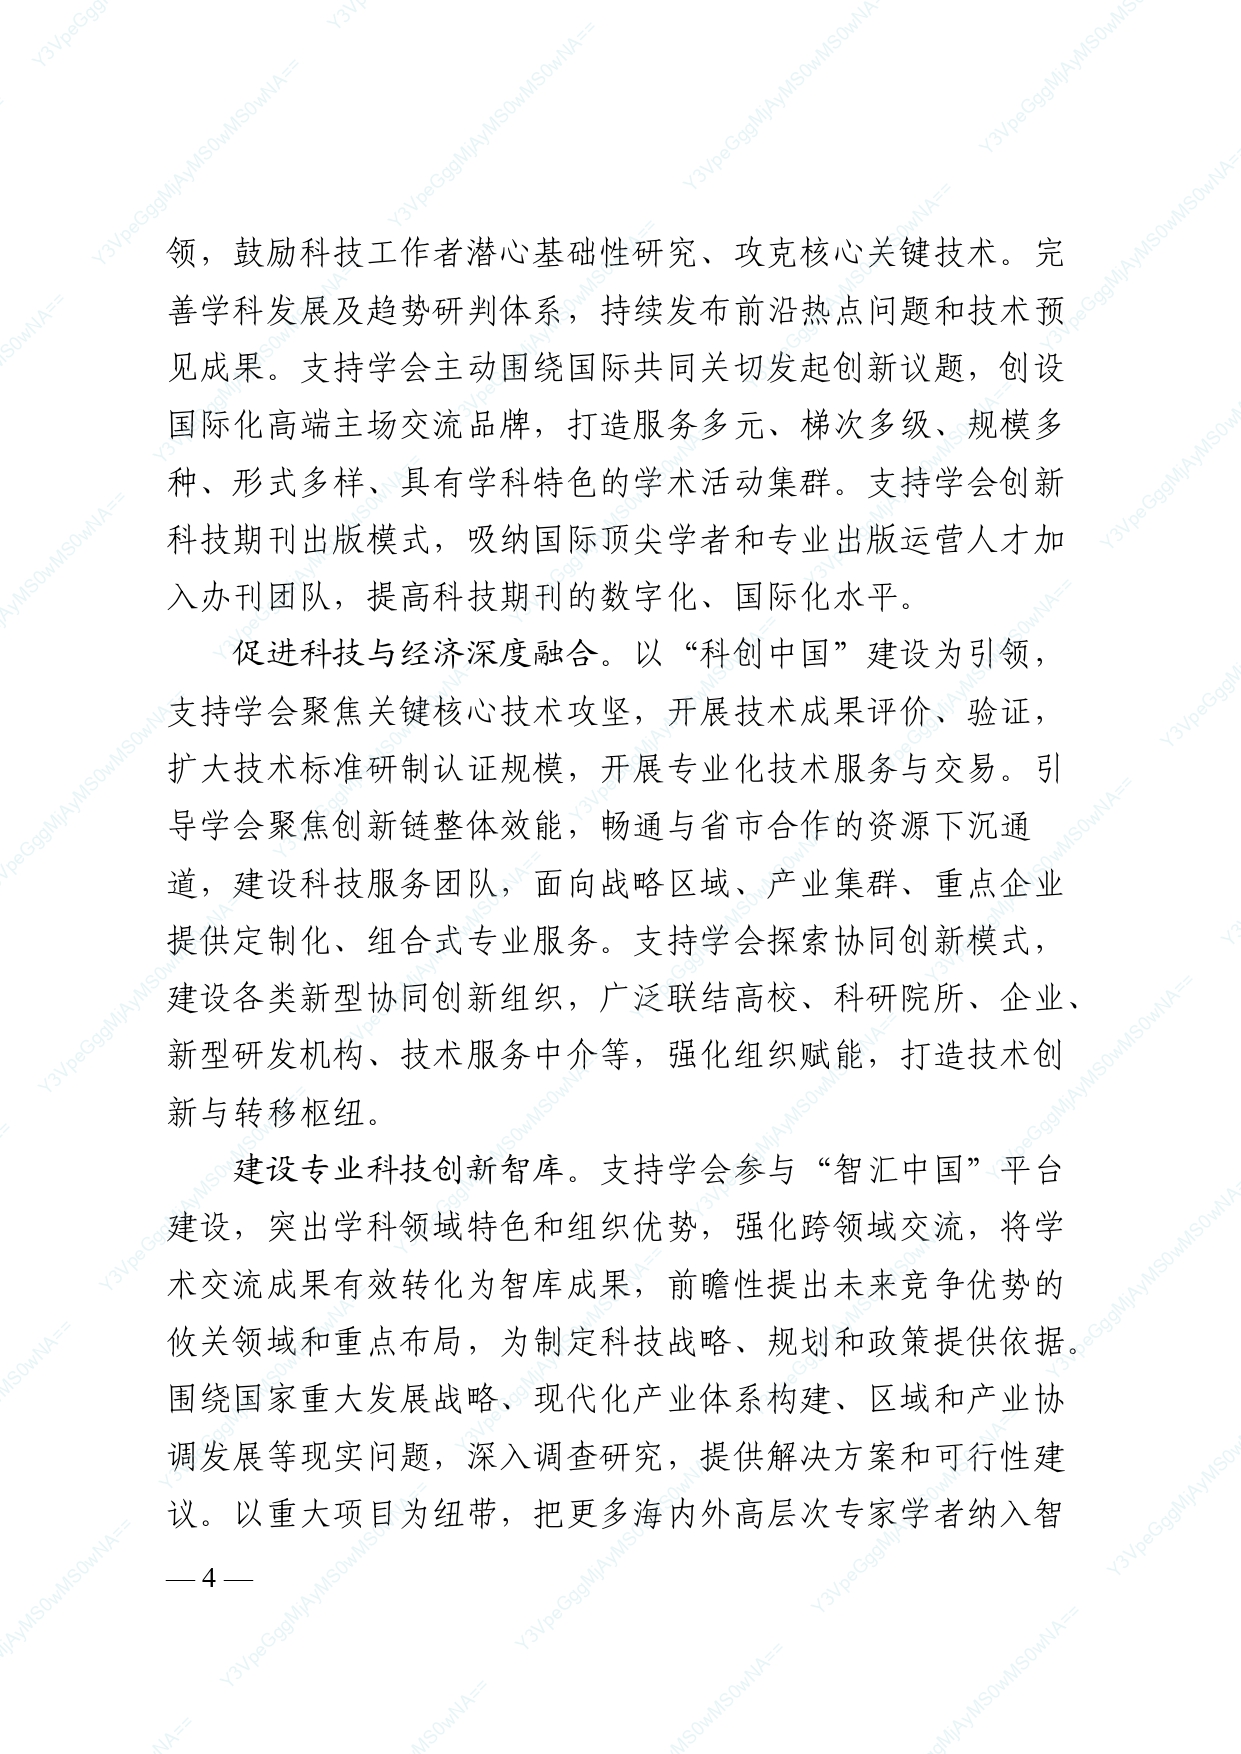 中国科协 民政部印发《关于进一步推动中国科协学会创新发展的意见》的通知_page-0004.jpg